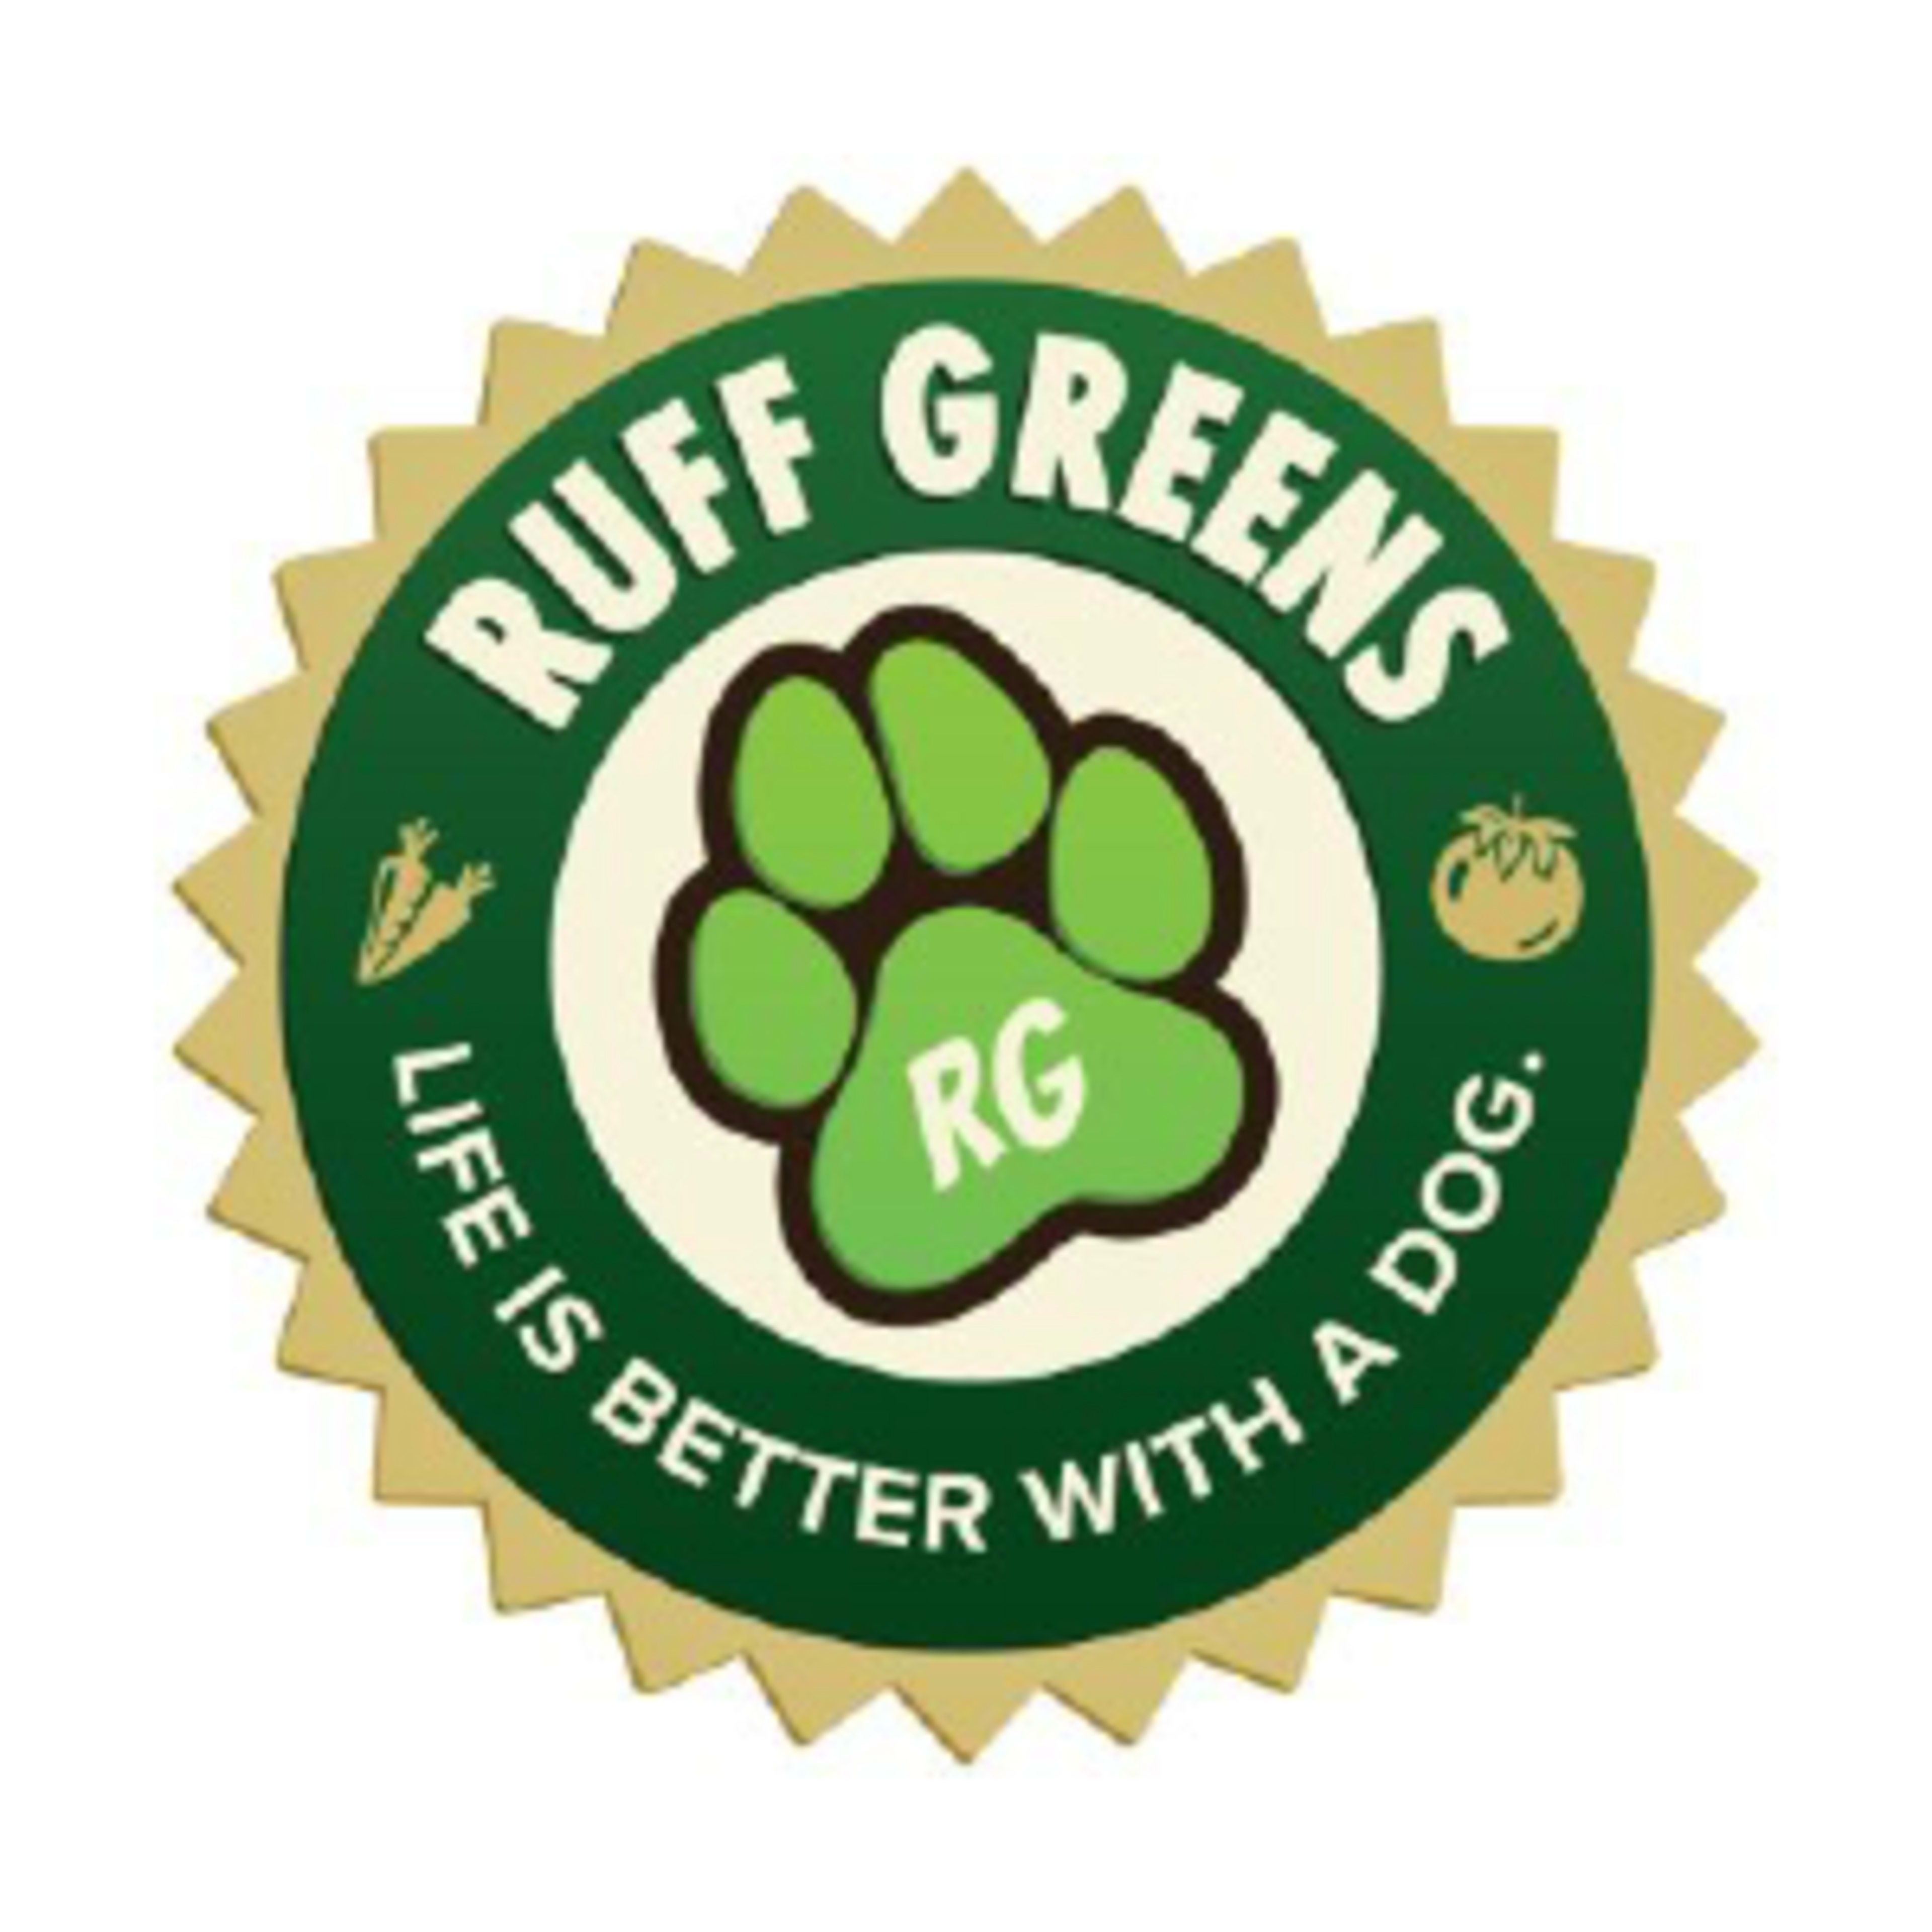 Ruff GreensCode